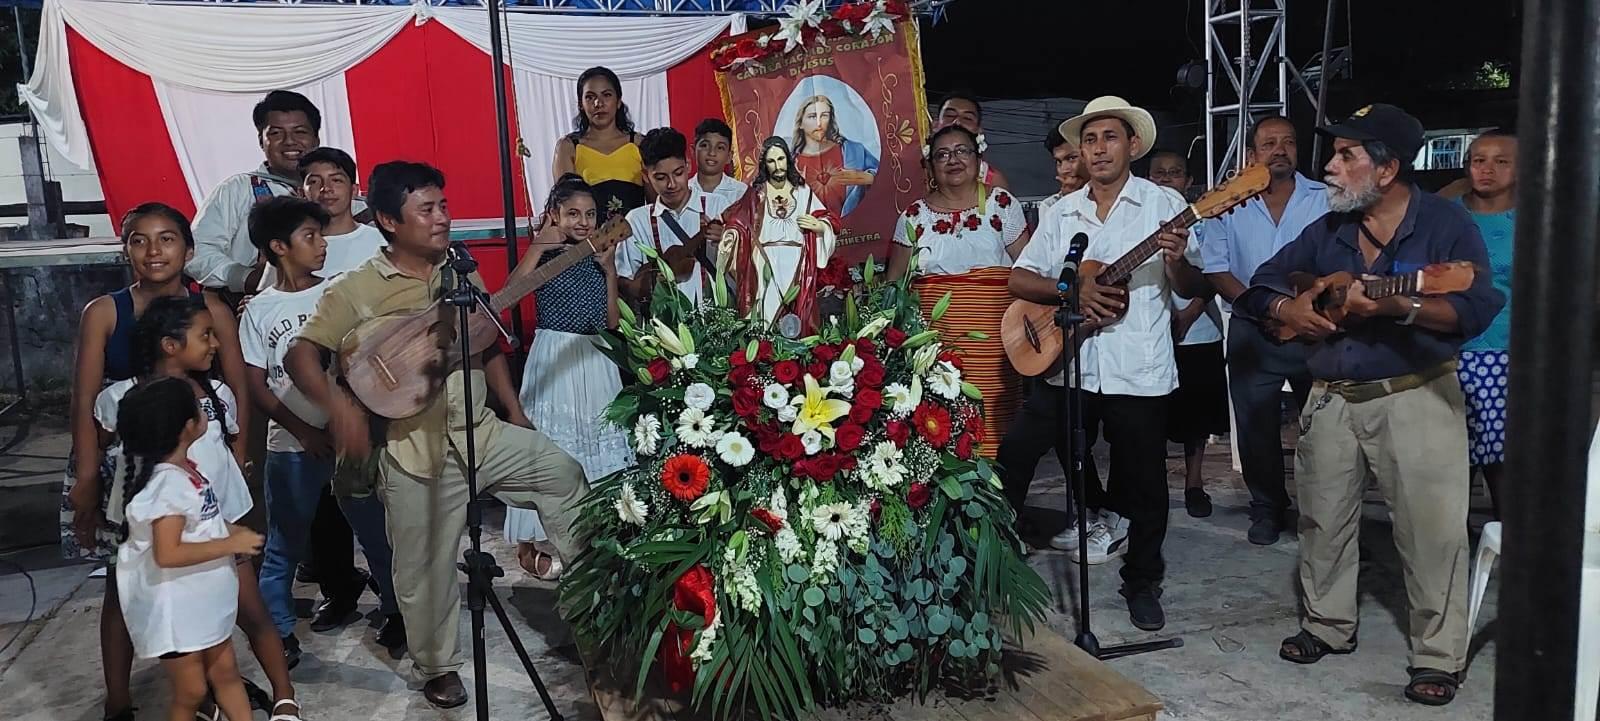 Fiestas en honor al Sagrado Corazón de Jesús en Jáltipan